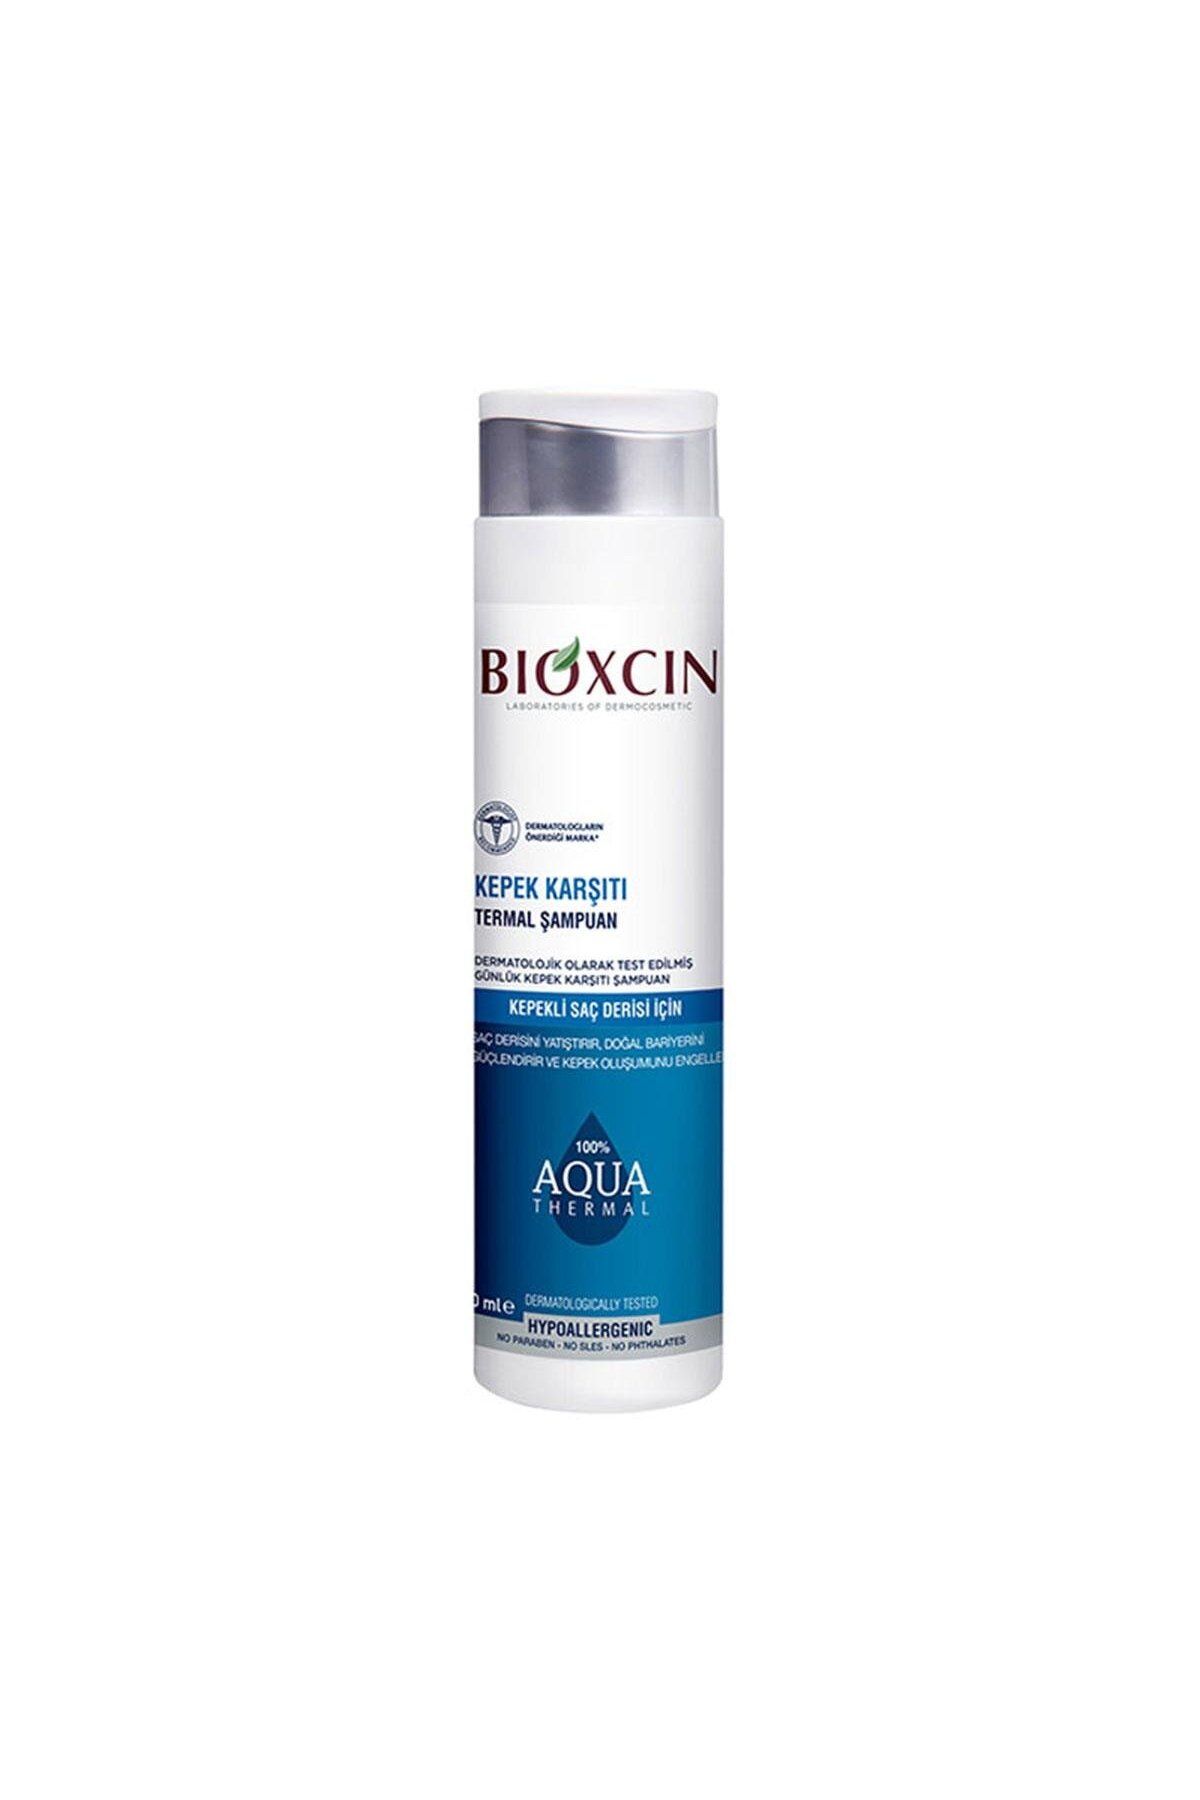 Bioxcin Aqua Thermal Kepekli Saç Derisi İçin Kepek Karşıtı Sülfatsız Termal Şampuan 300 ml